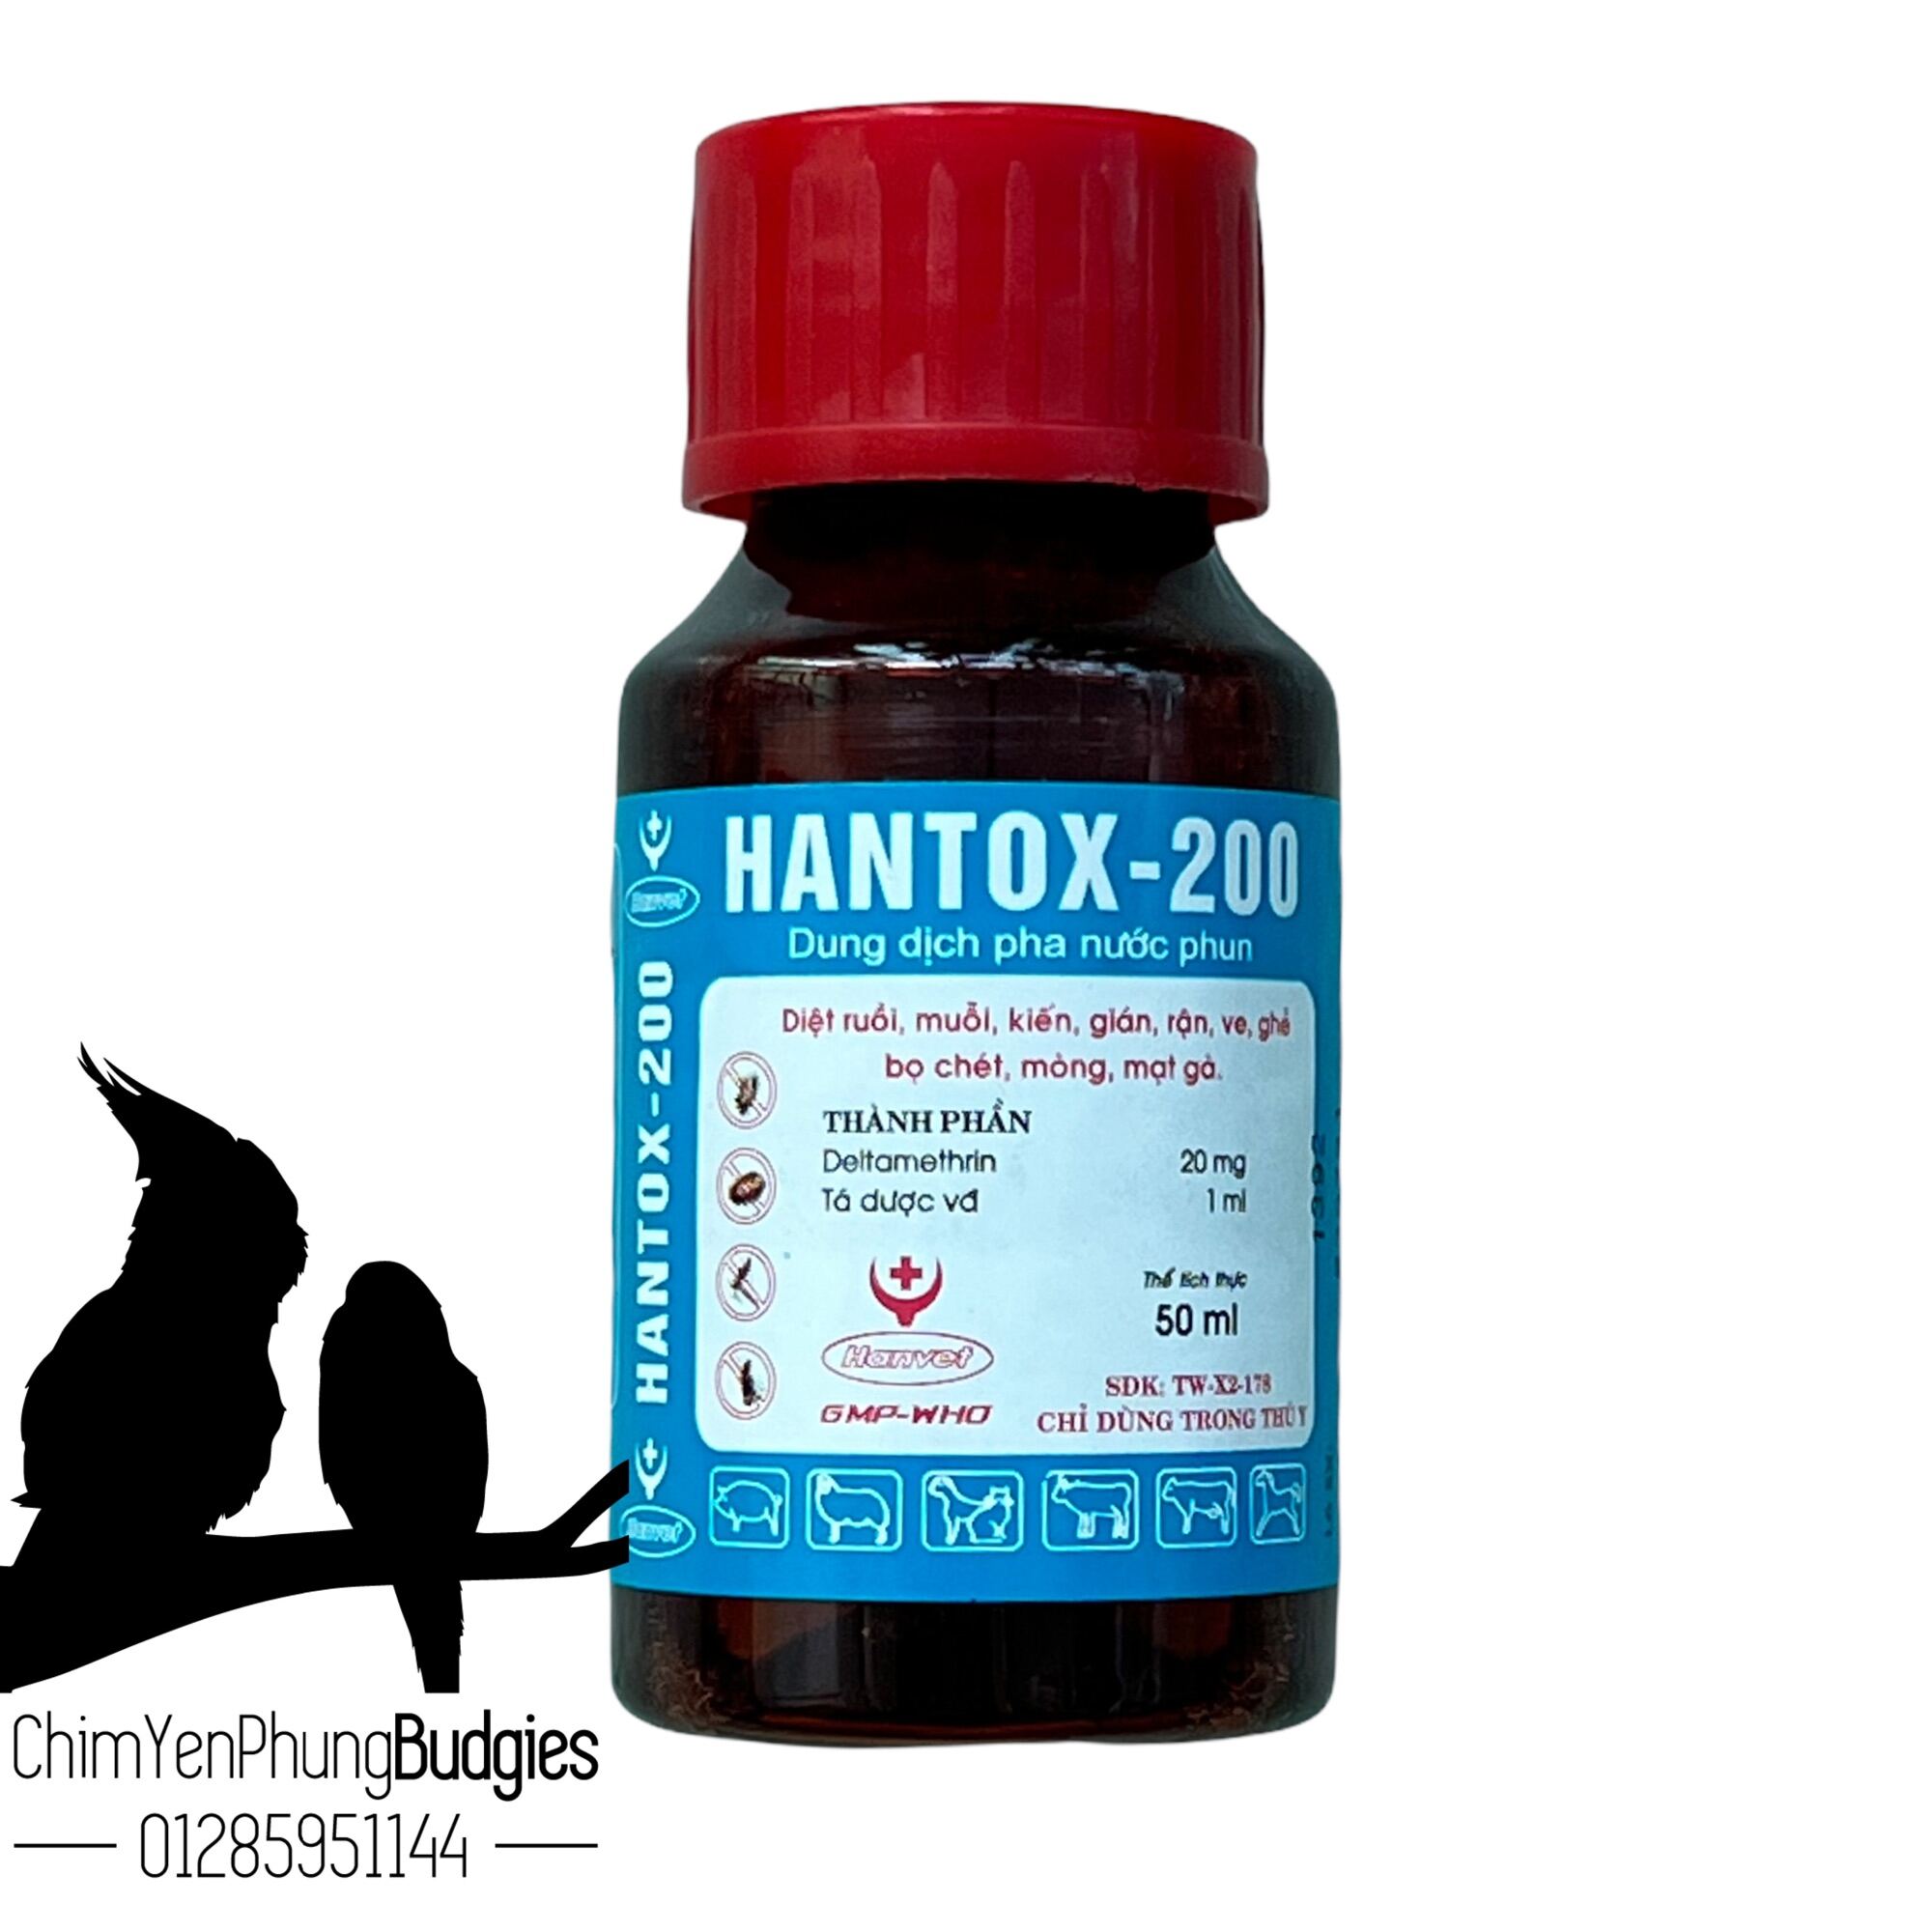 HANTOX 200 - Dung dịch nước phun hỗ trợ diệt ruồi, muỗi, kiến, gián, rận, ve, bọ chét, mòng, mạt gà [50ml]